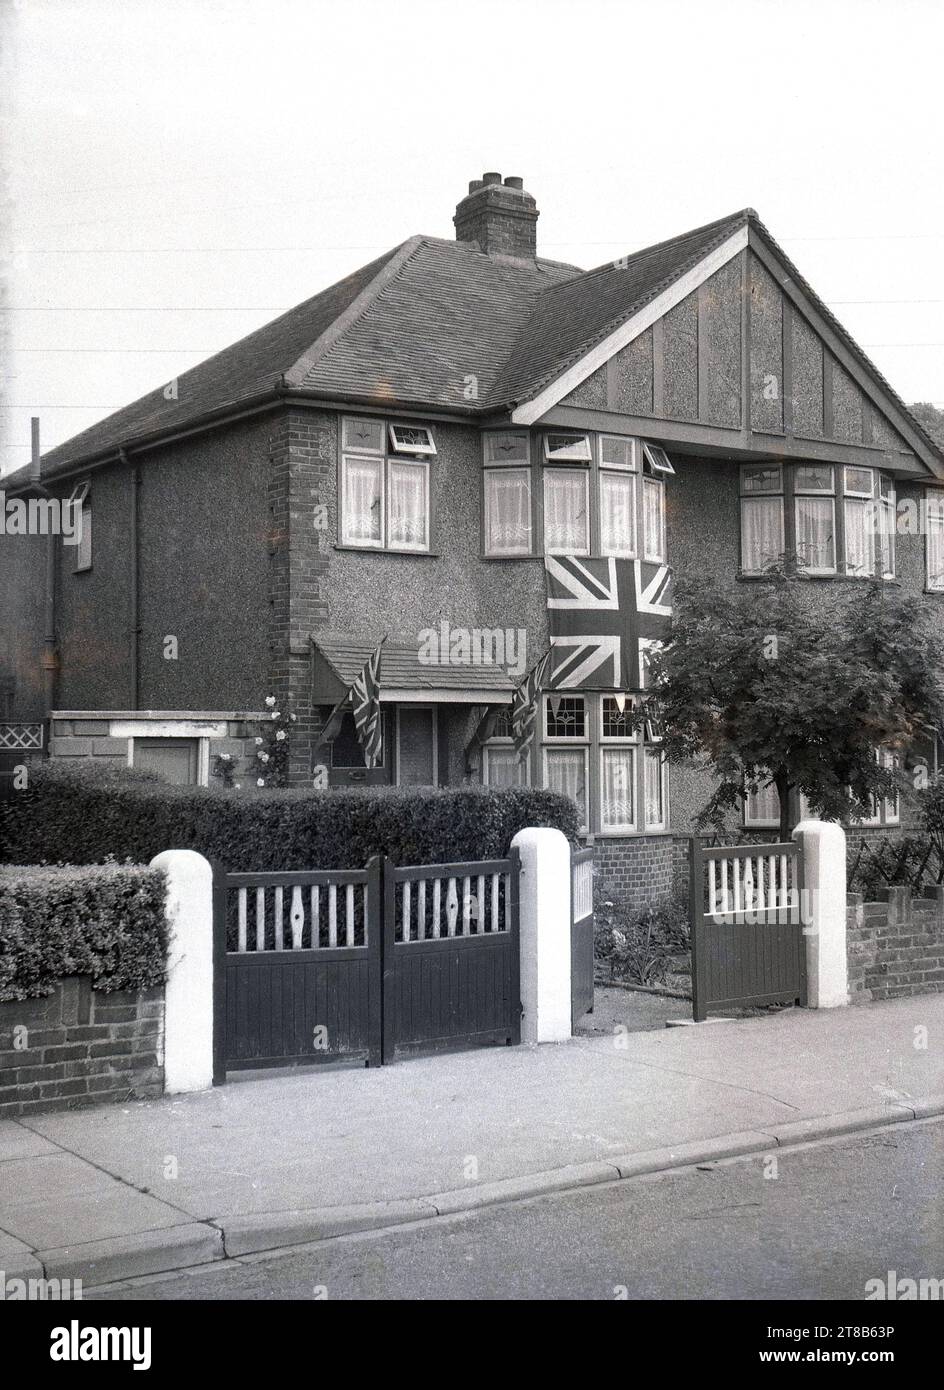 1953, historique, vue de face d'une maison de banlieue semi-détachée construite dans les années 1930, rendu de galets, avec un grand drapeau de l'Union Jack à l'extérieur, sous la fenêtre, avec des drapeaux plus petits sur le porche, Angleterre, Royaume-Uni, en célébration du couronnement de la Reine. Banque D'Images